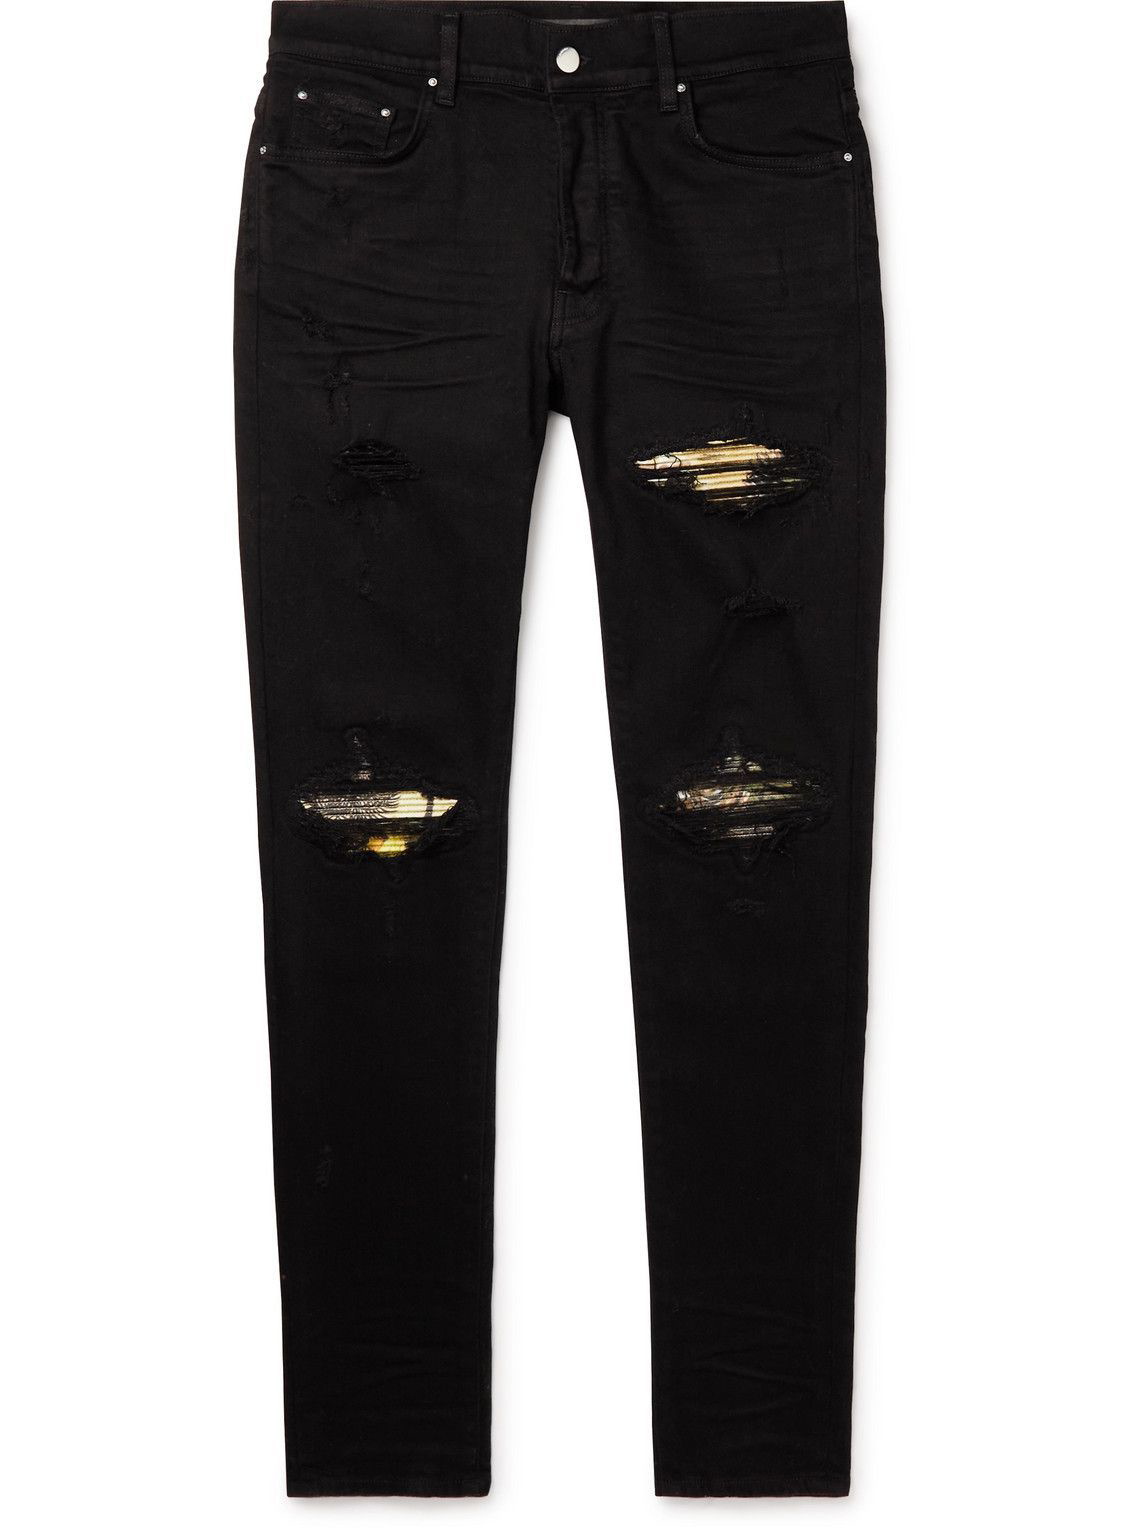 AMIRI - MX1 Panelled Distressed Skinny Jeans - Black